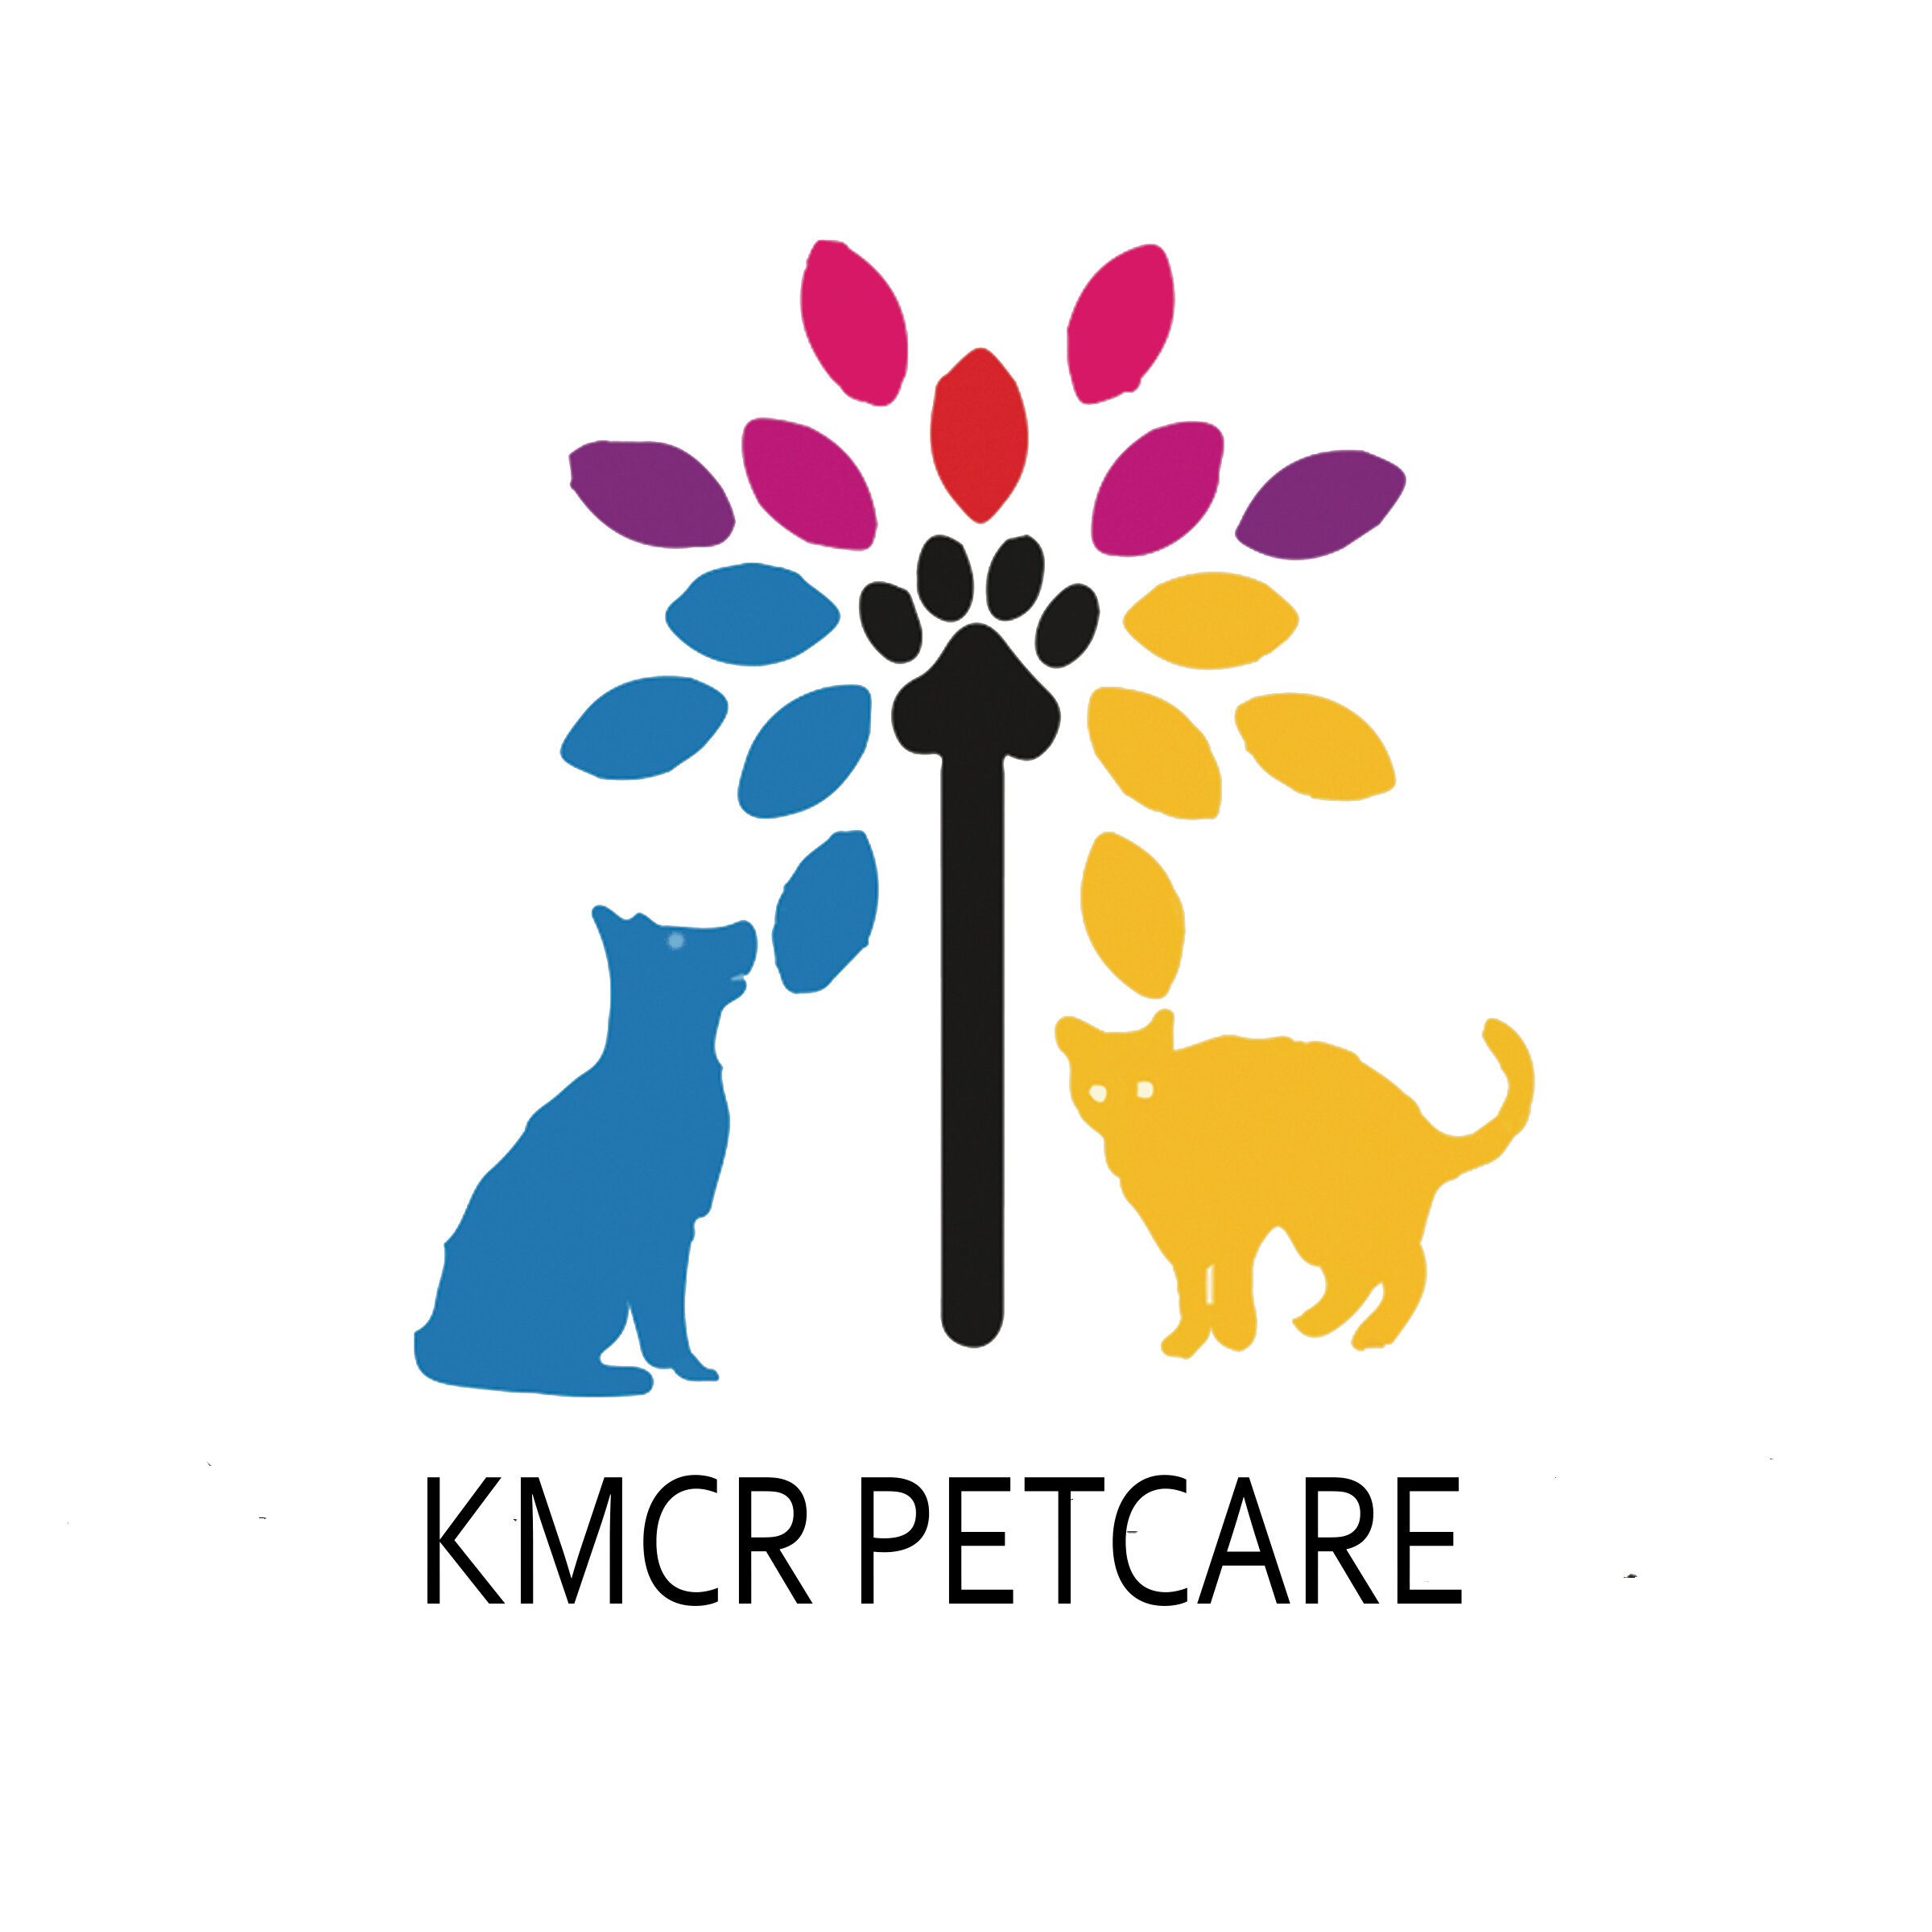 KMCR Petcare